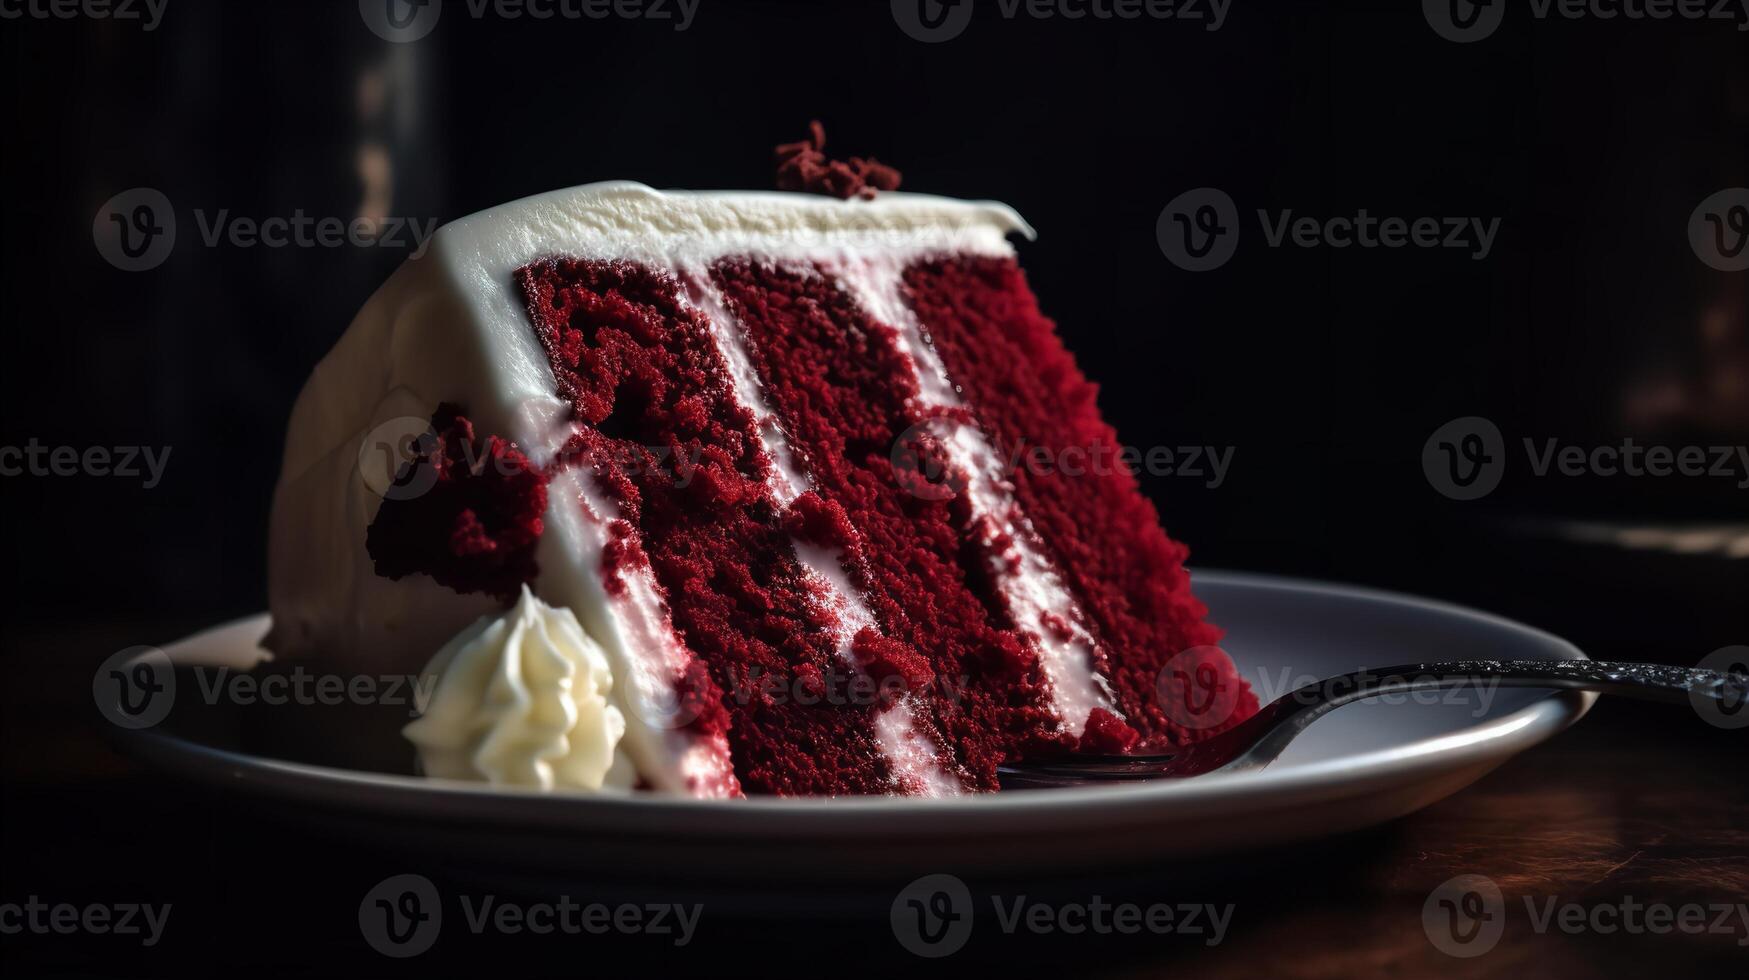 Dive into the Velvety Red Velvet Cake photo